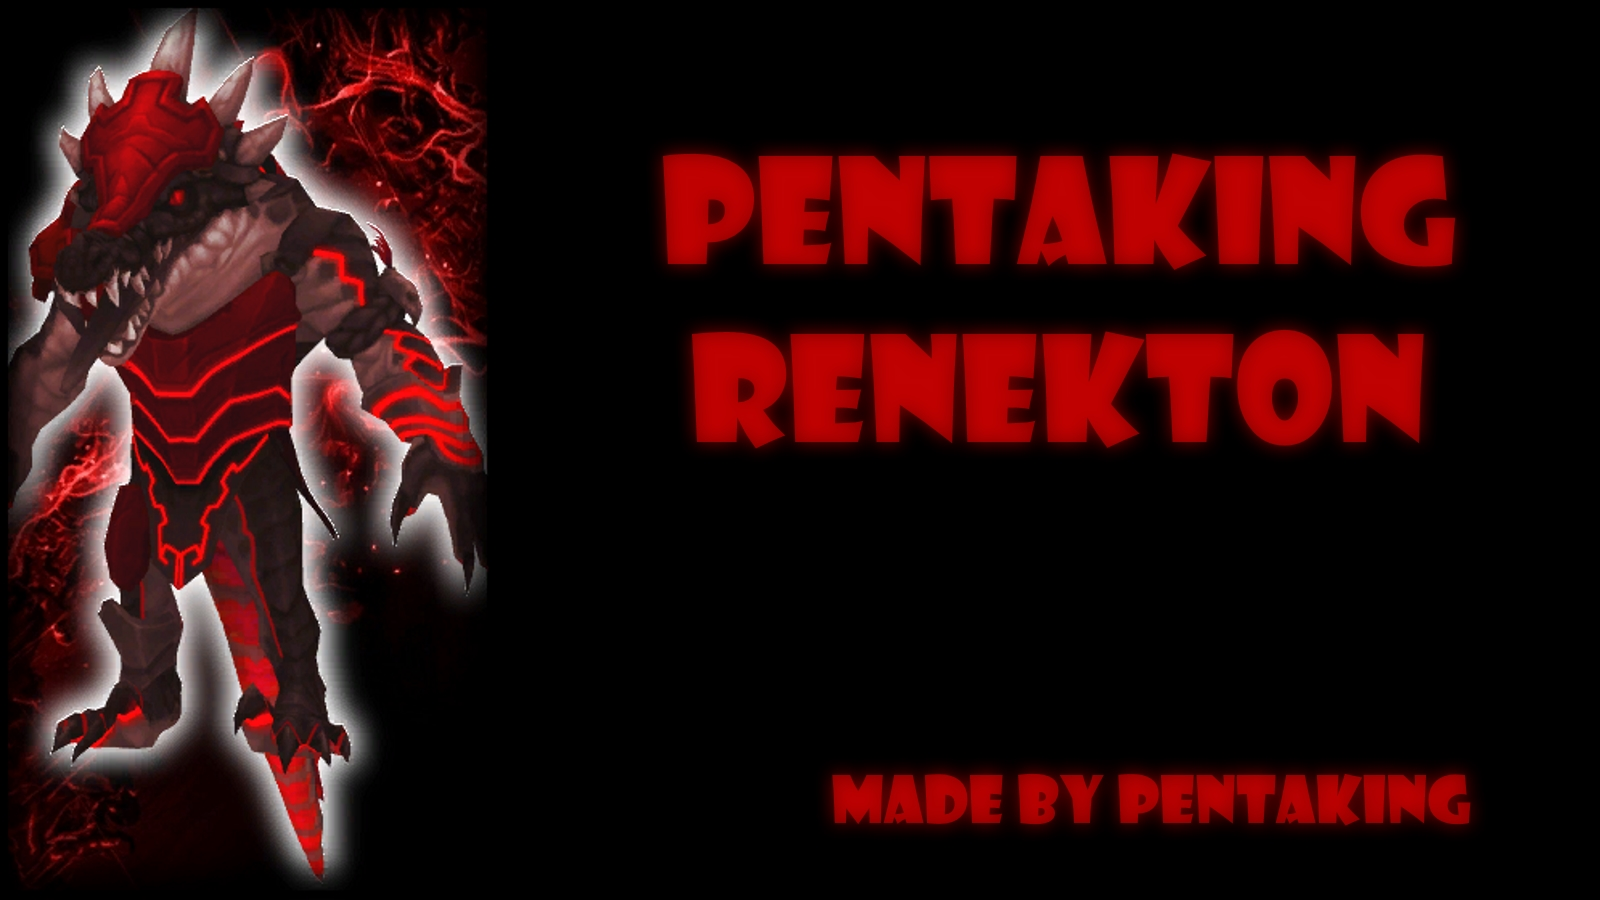 PentaKing Renekton